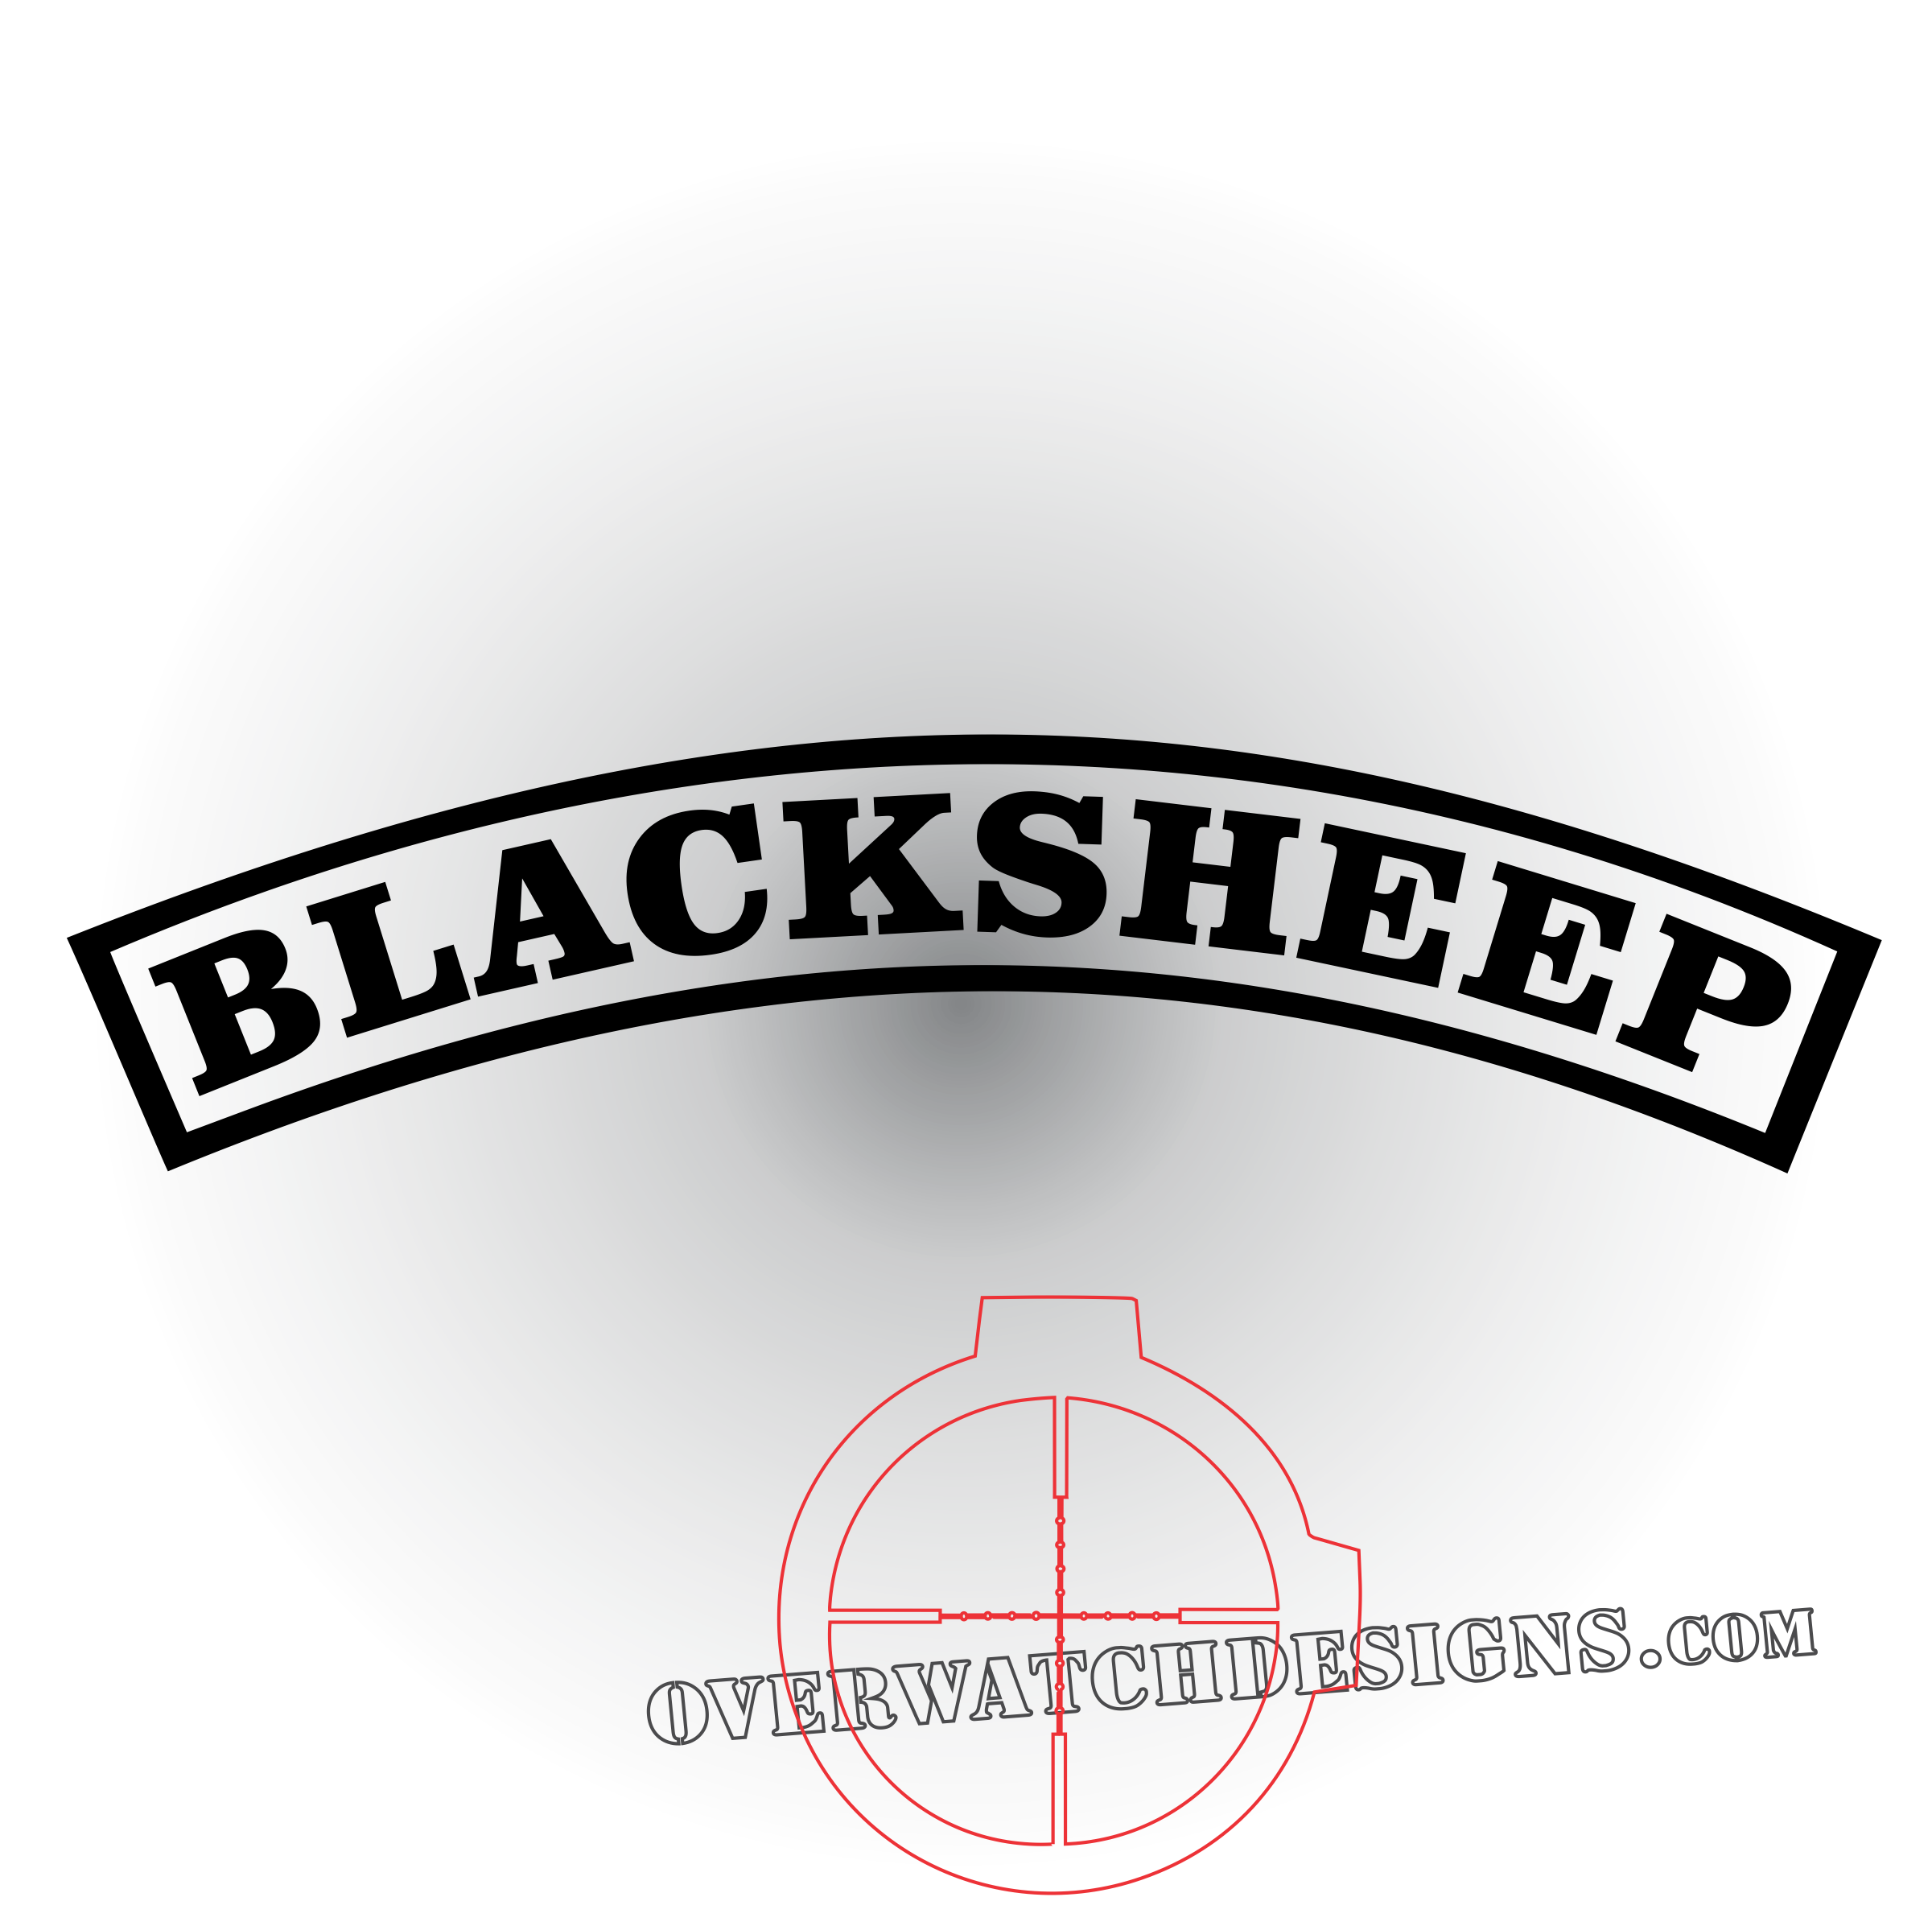 Blacksheep Tab Sticker